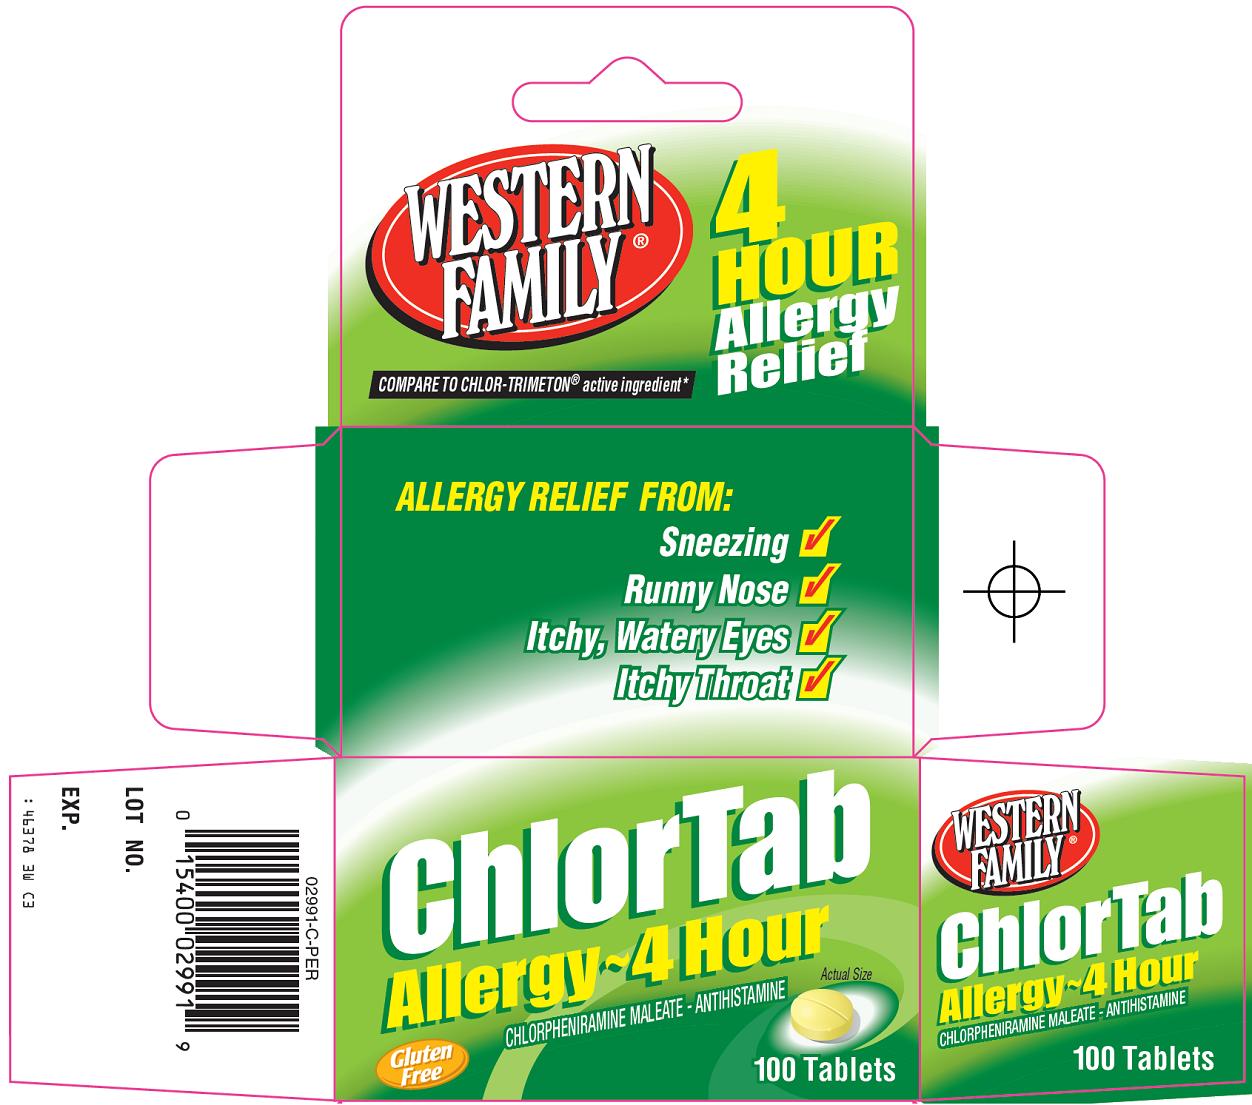 ChlorTab Carton Image 1